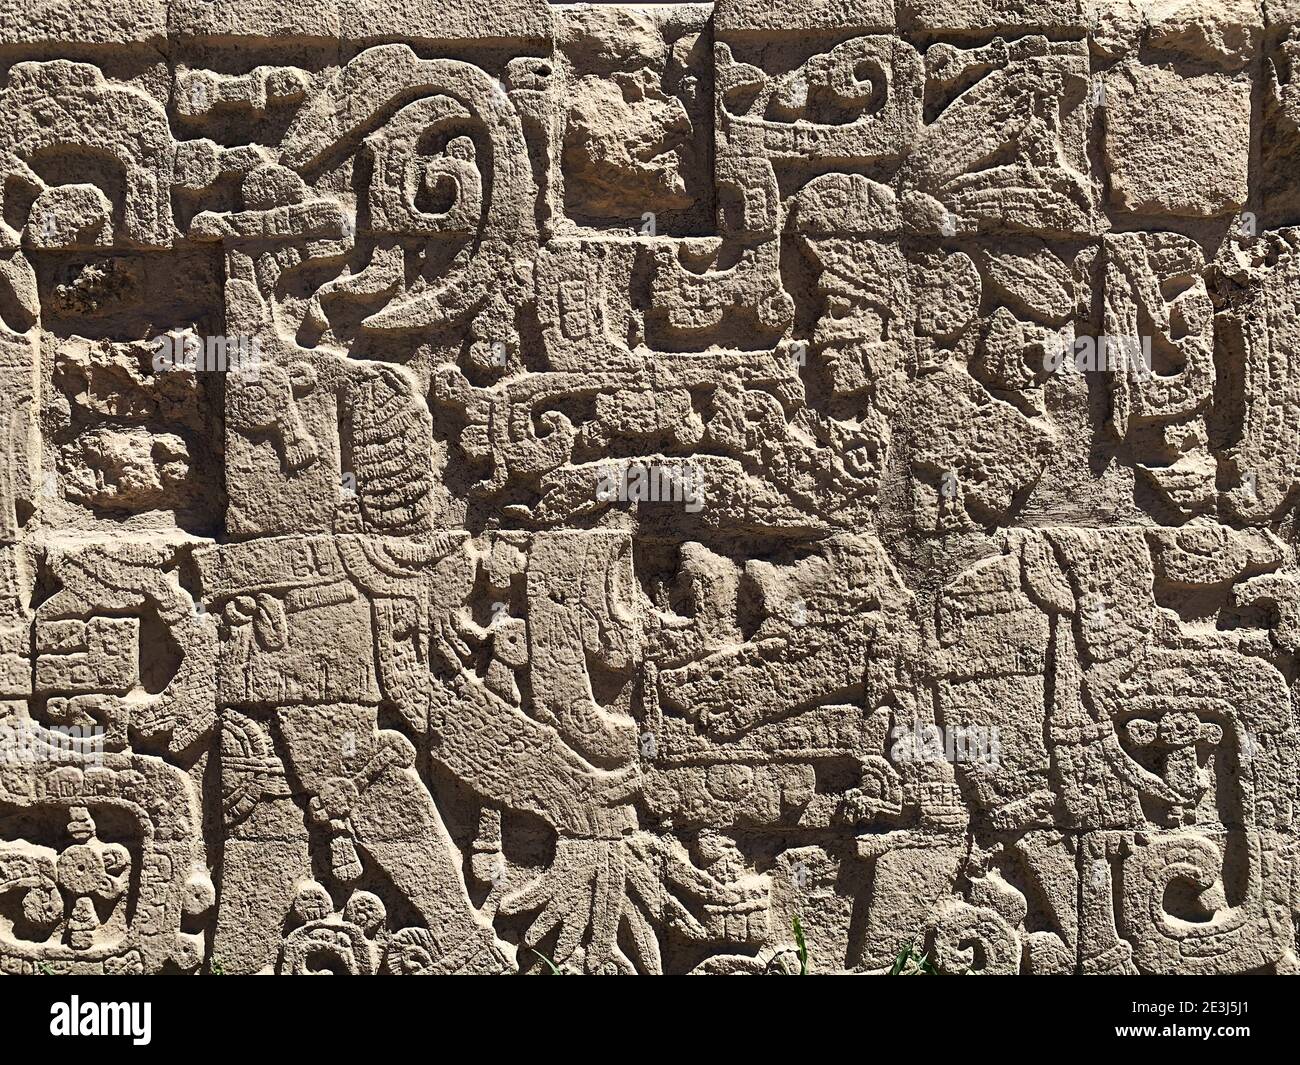 Détail de la sculpture murale dans les anciennes ruines mayas de Chichen Itza, péninsule du Yucatan, Mexique Banque D'Images